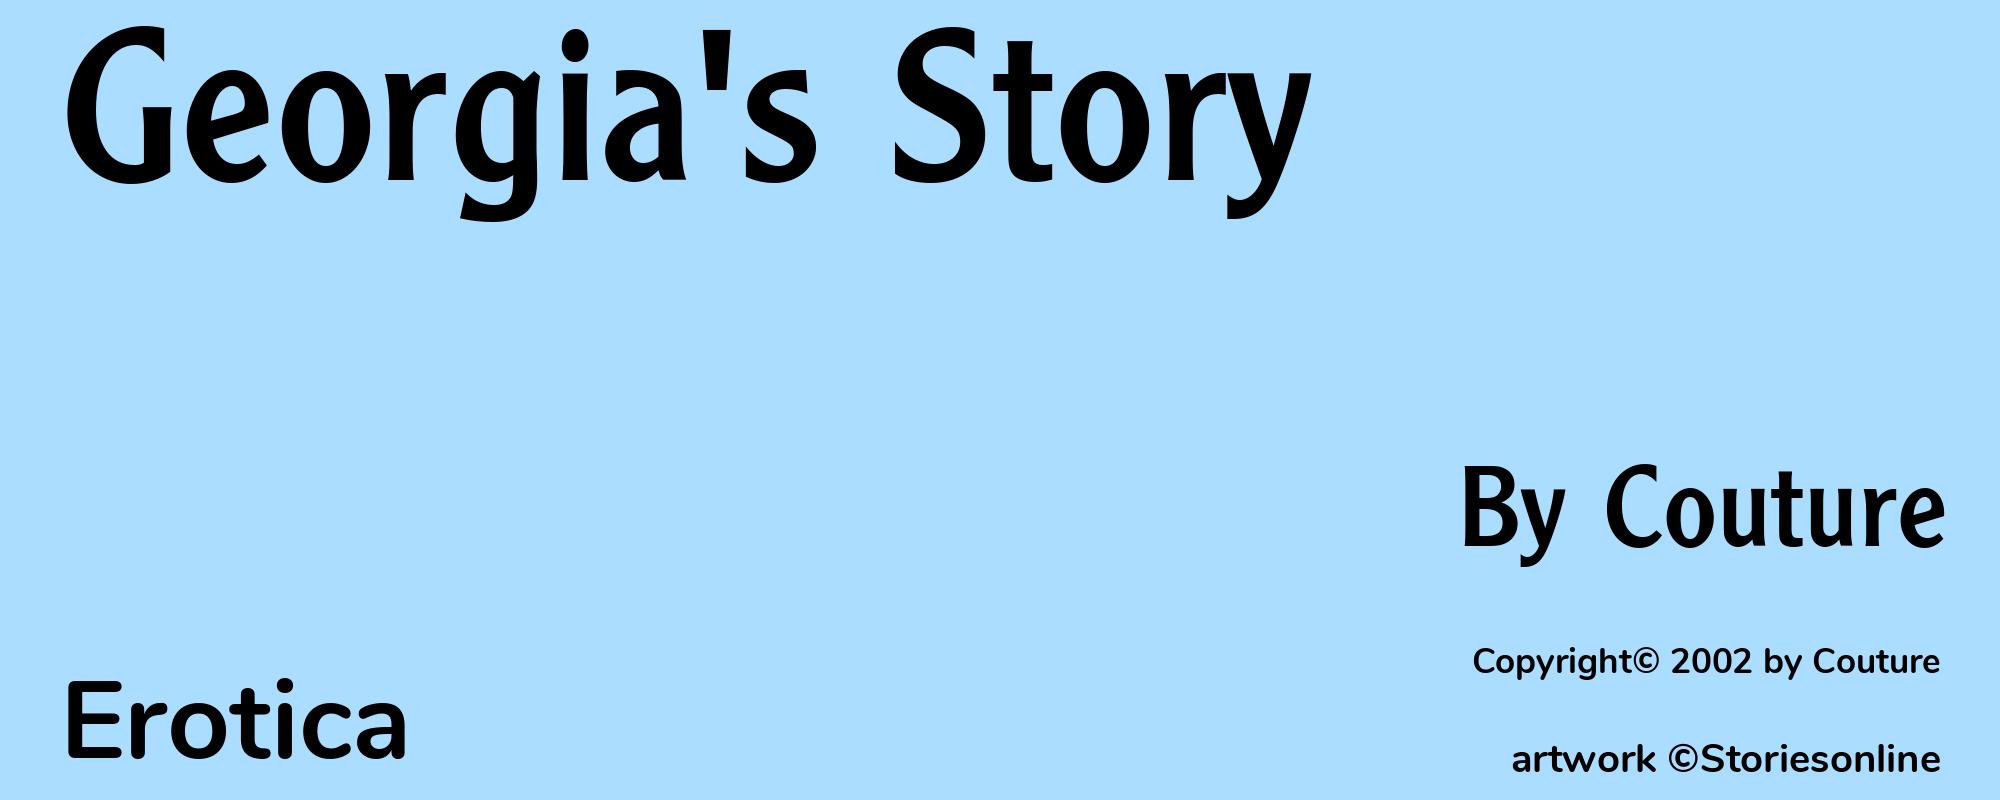 Georgia's Story - Cover